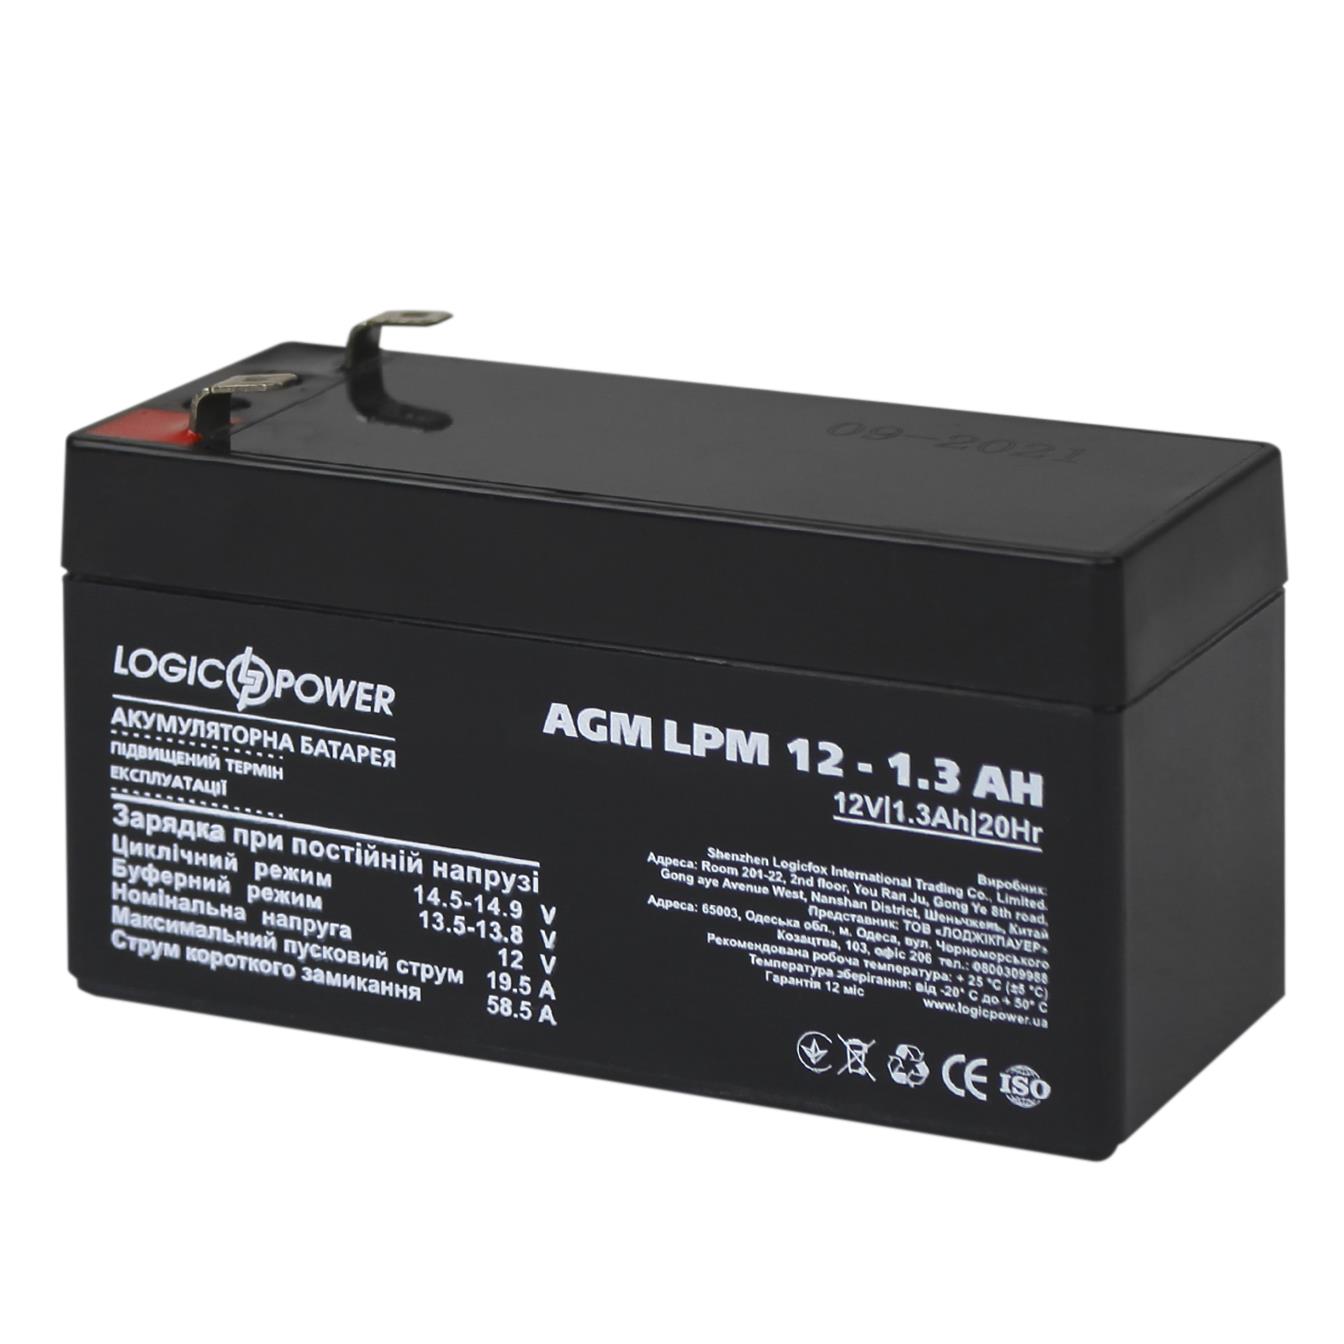 Купить аккумулятор свинцово-кислотный LogicPower AGM LPM 12V - 1.3 Ah (4131) в Днепре